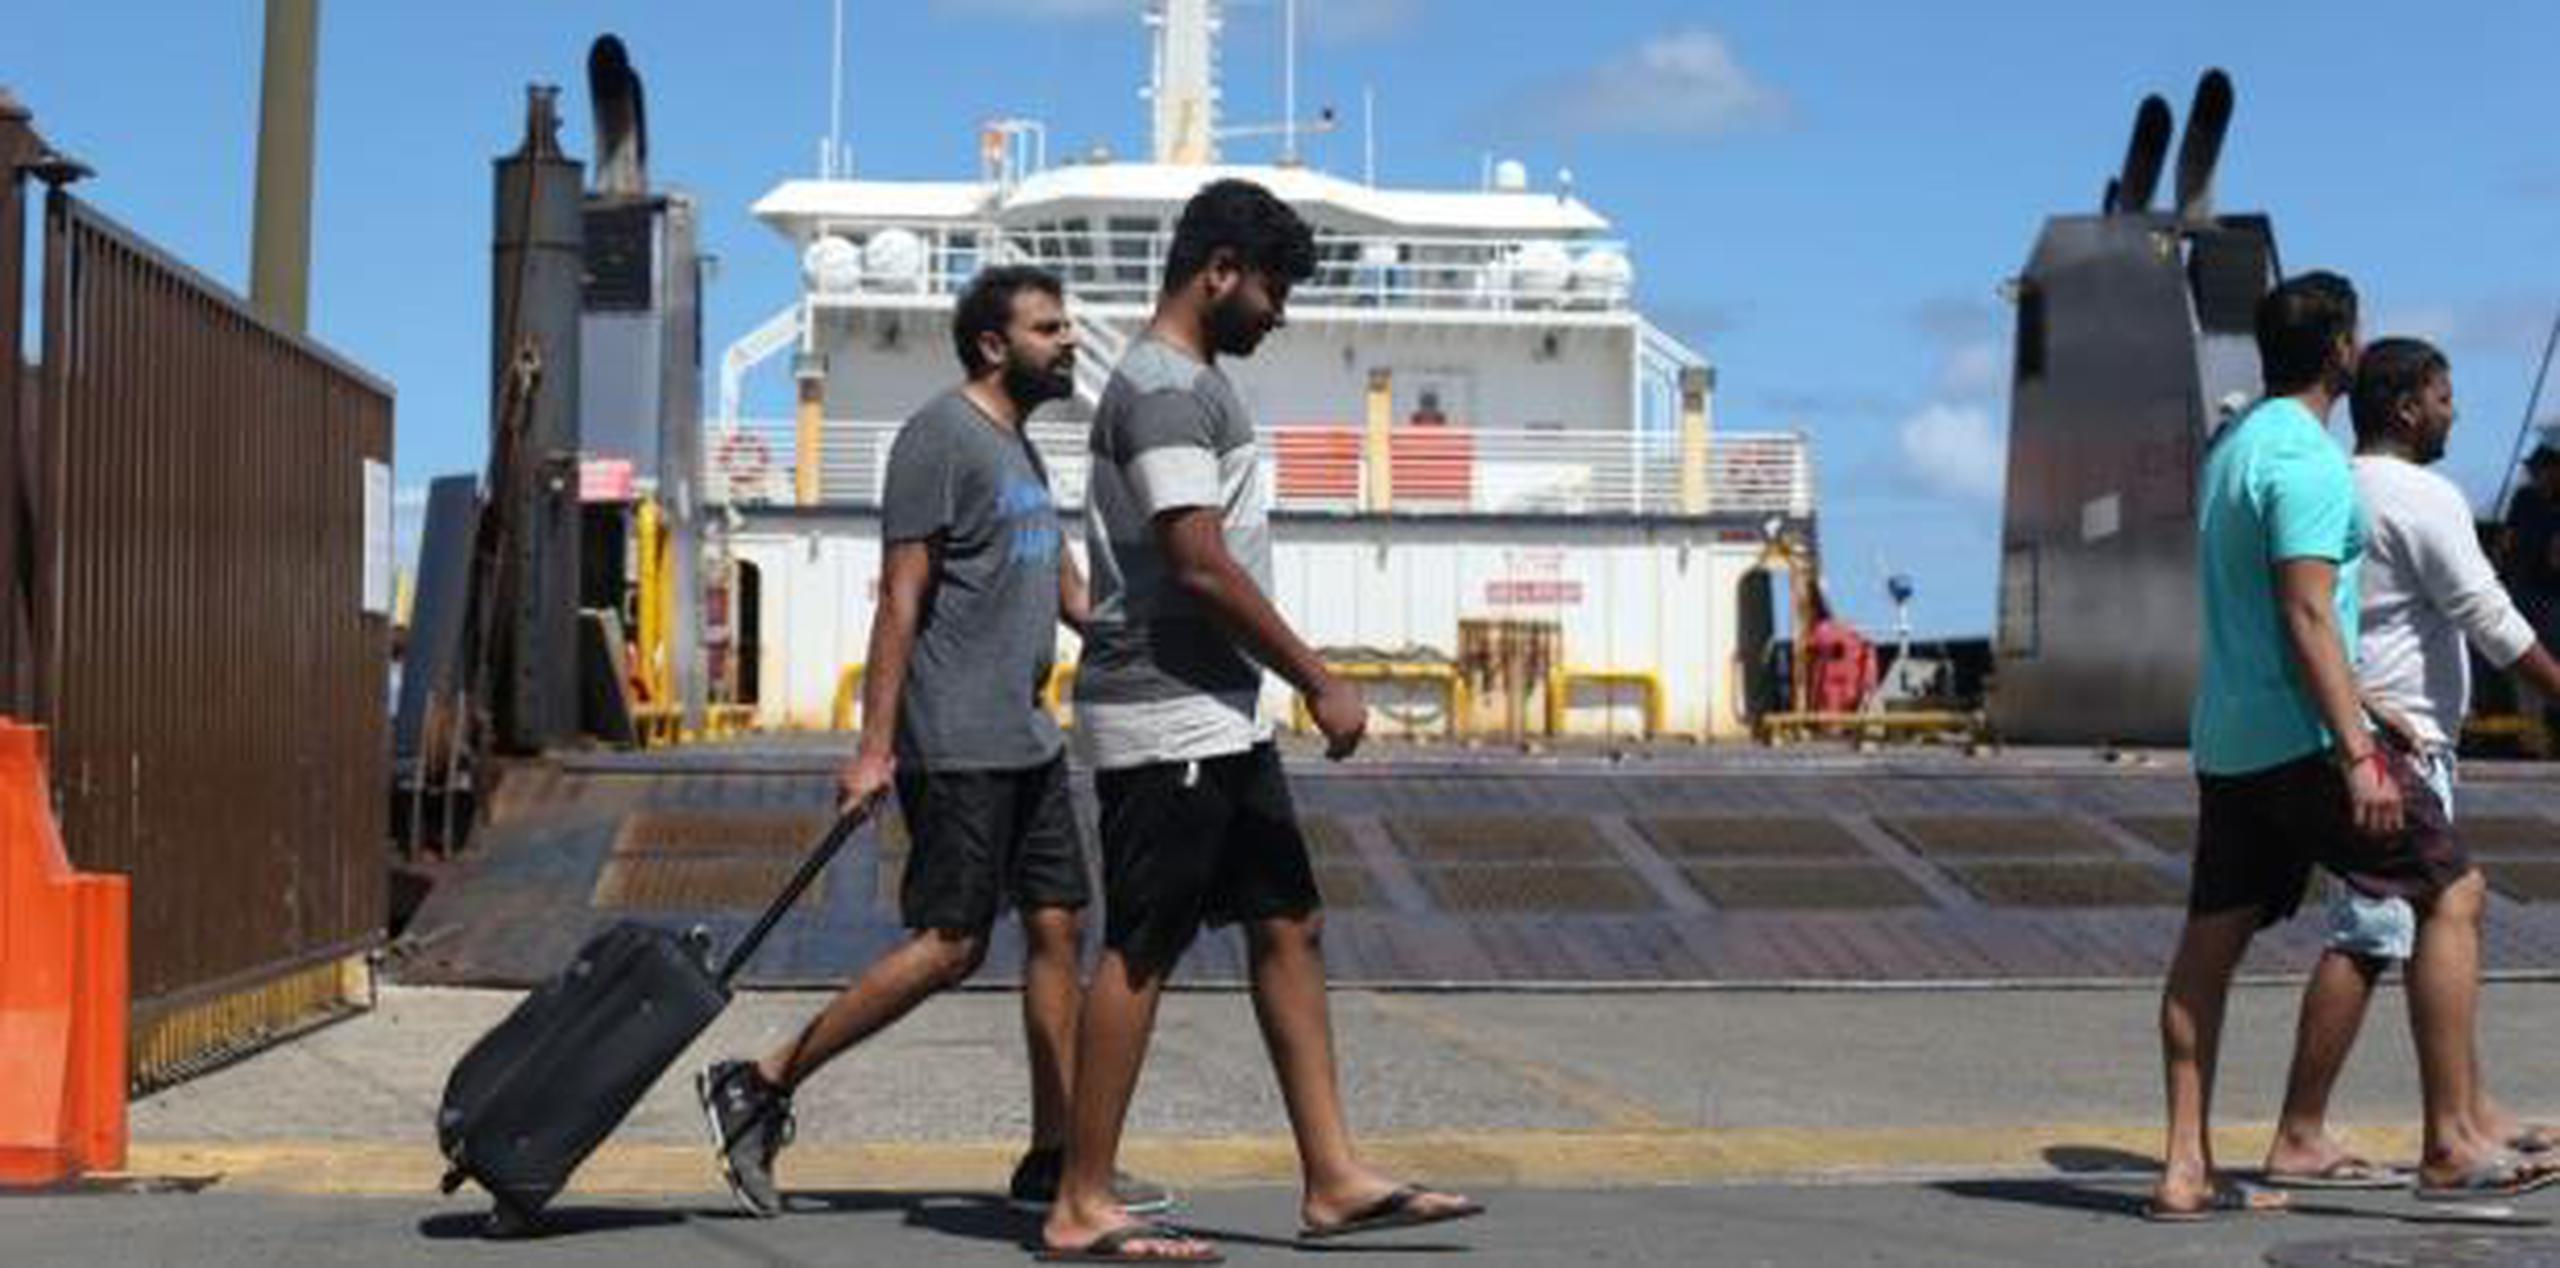 A través de las redes sociales, los pasajeros relataron su odisea de estar horas en la espera de una embarcación que los regresara hasta sus hogares . (teresa.canino@gfrmedia.com)